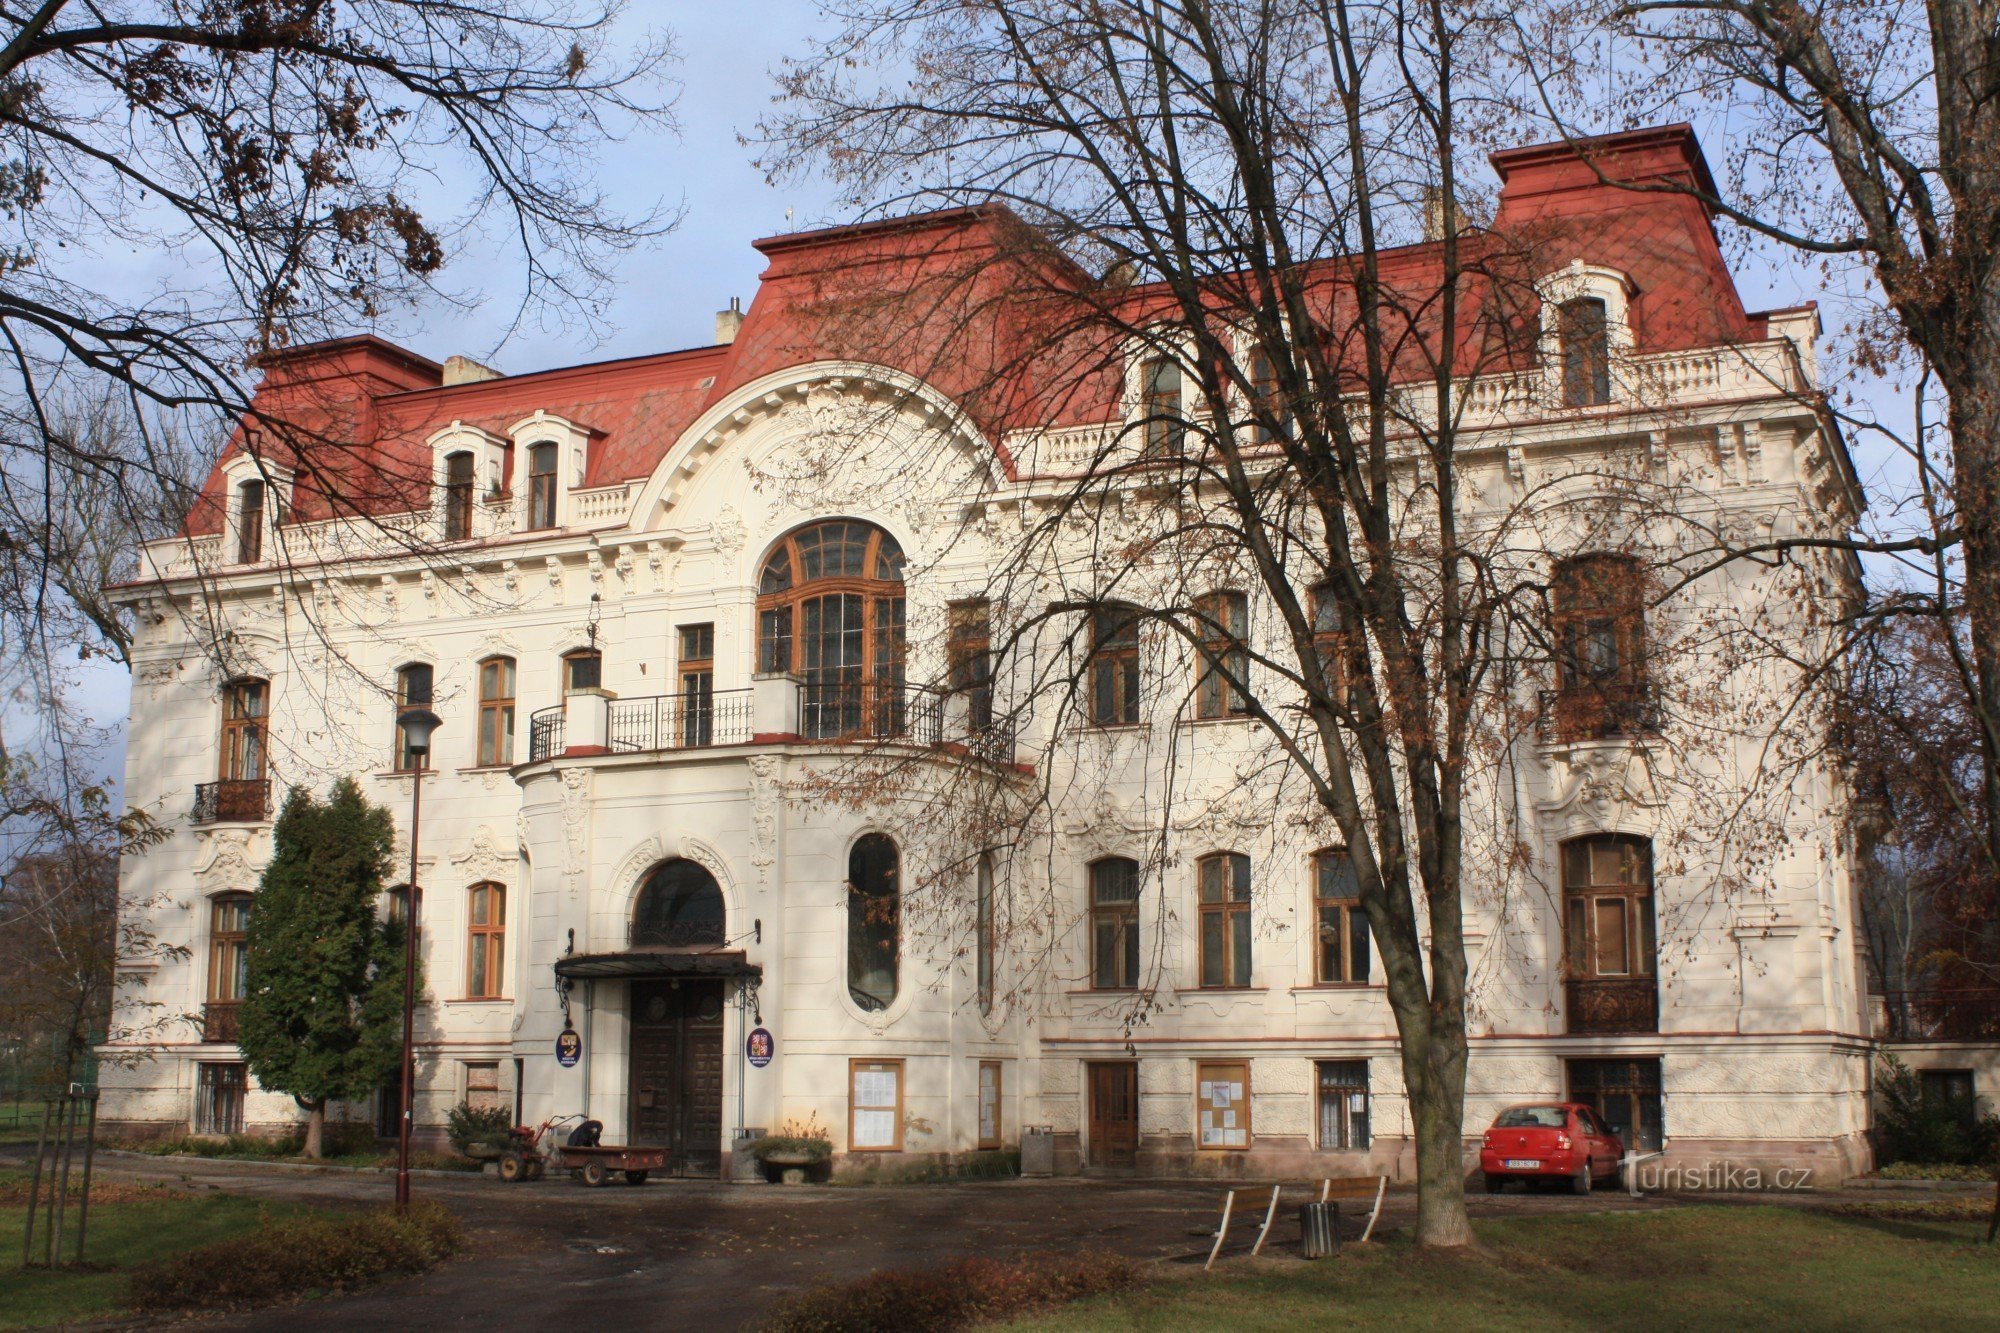 U vili se danas nalazi Svitavka - gradski ured